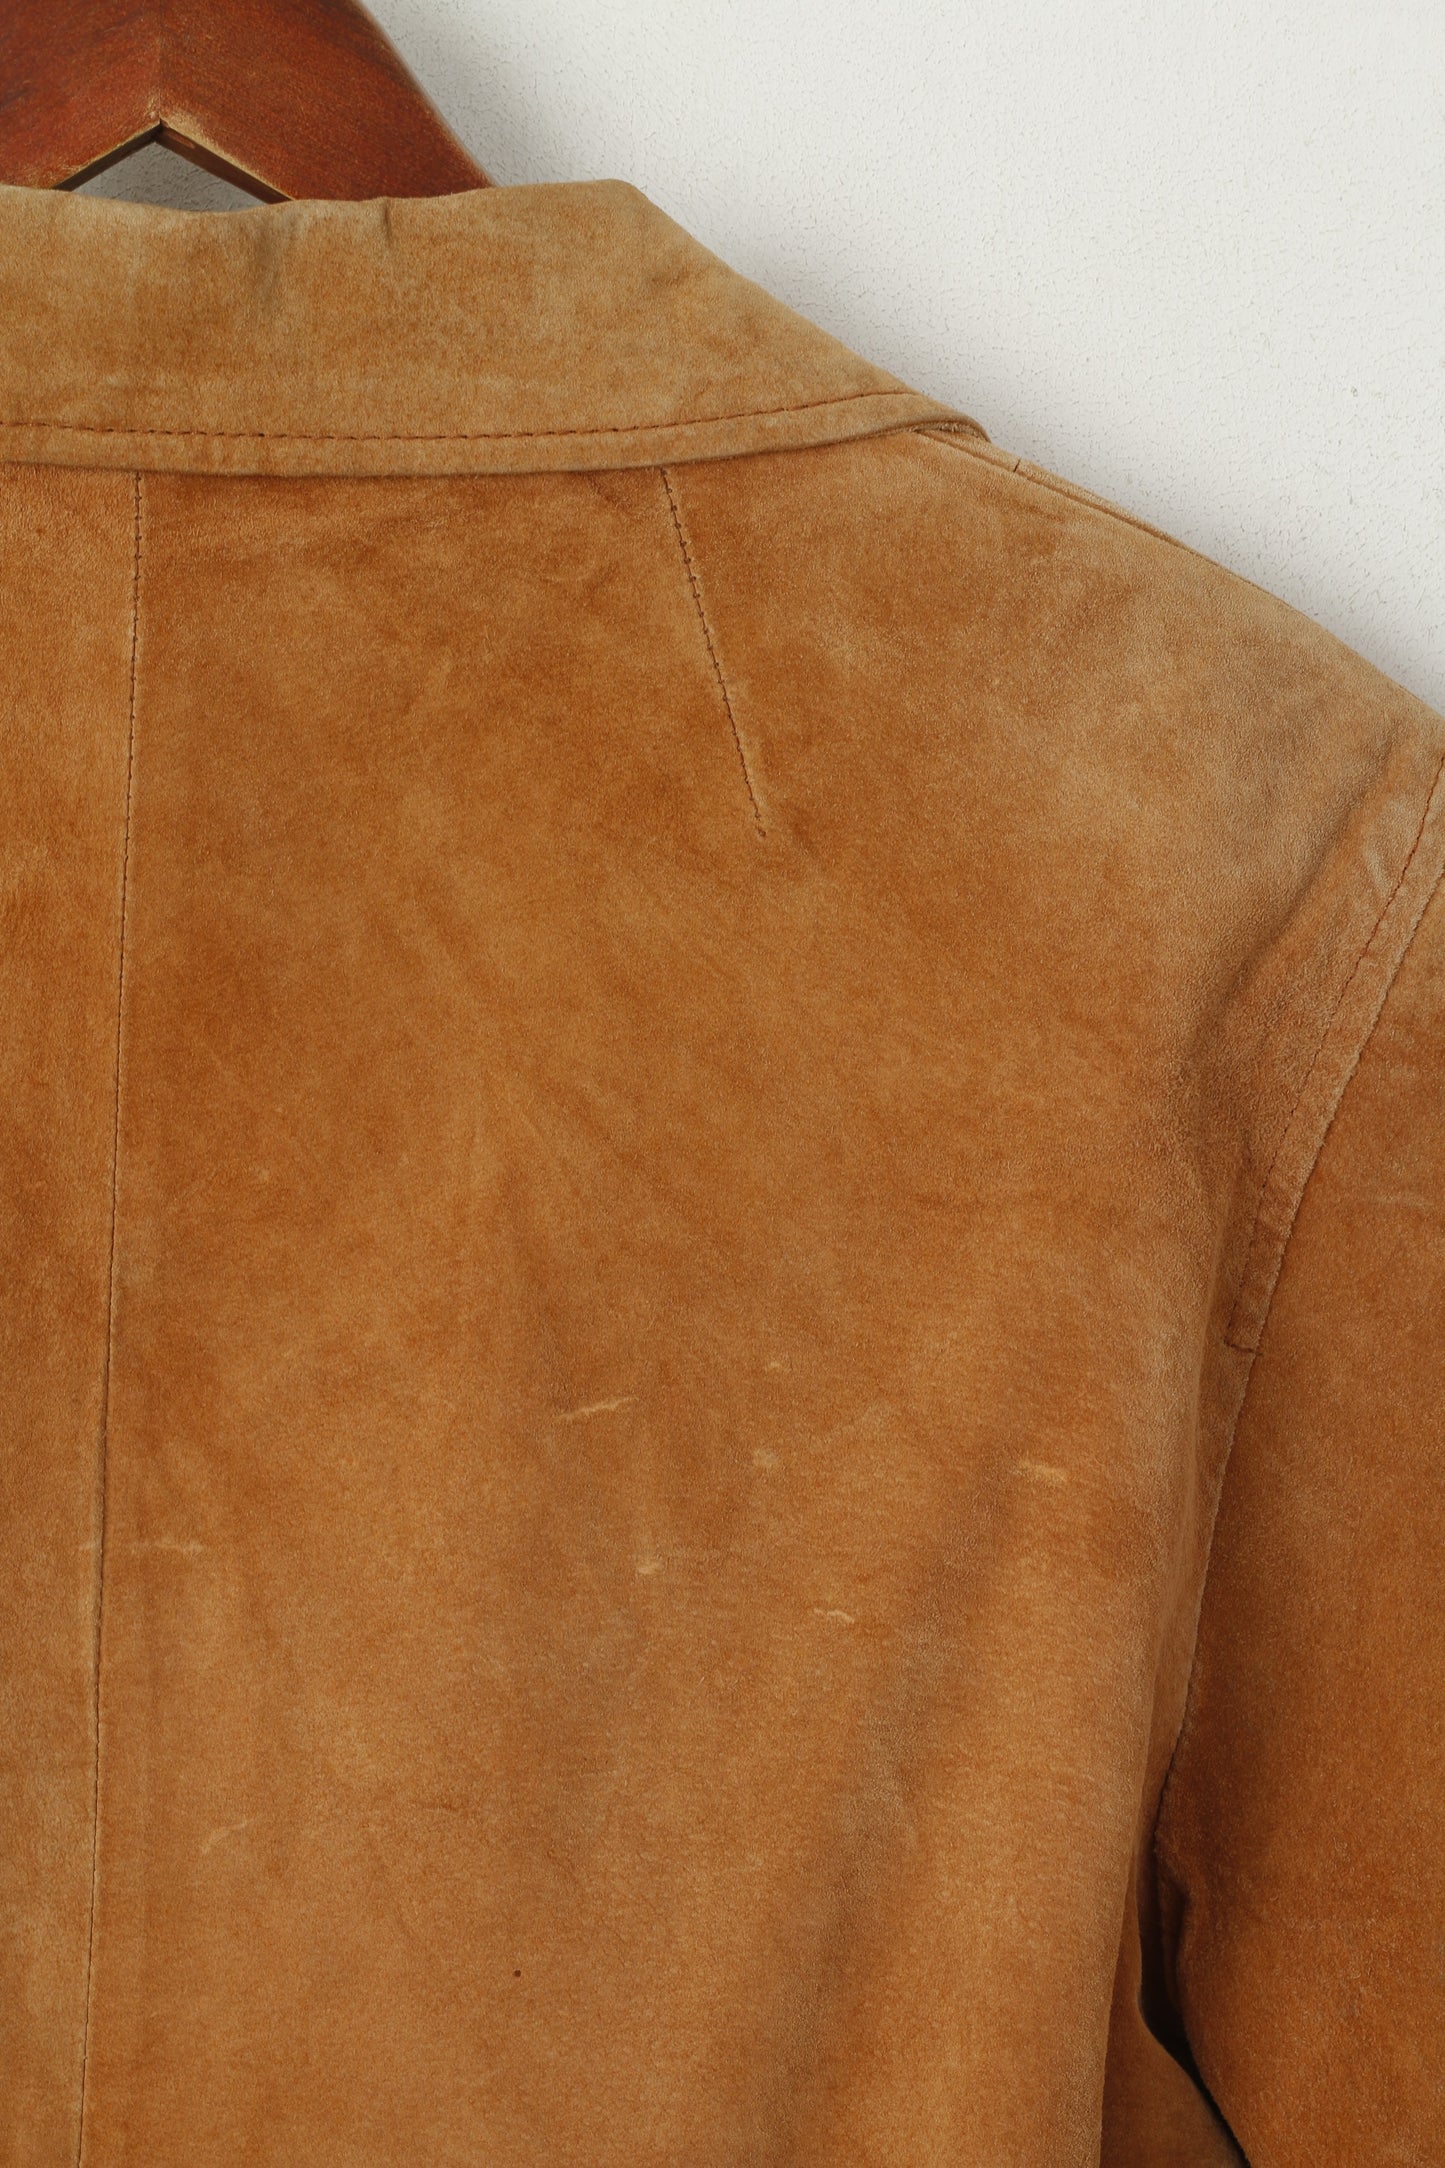 Good Time Women 38 M Leather Jacket Camel Vintage Suede Shoulder Pads Top